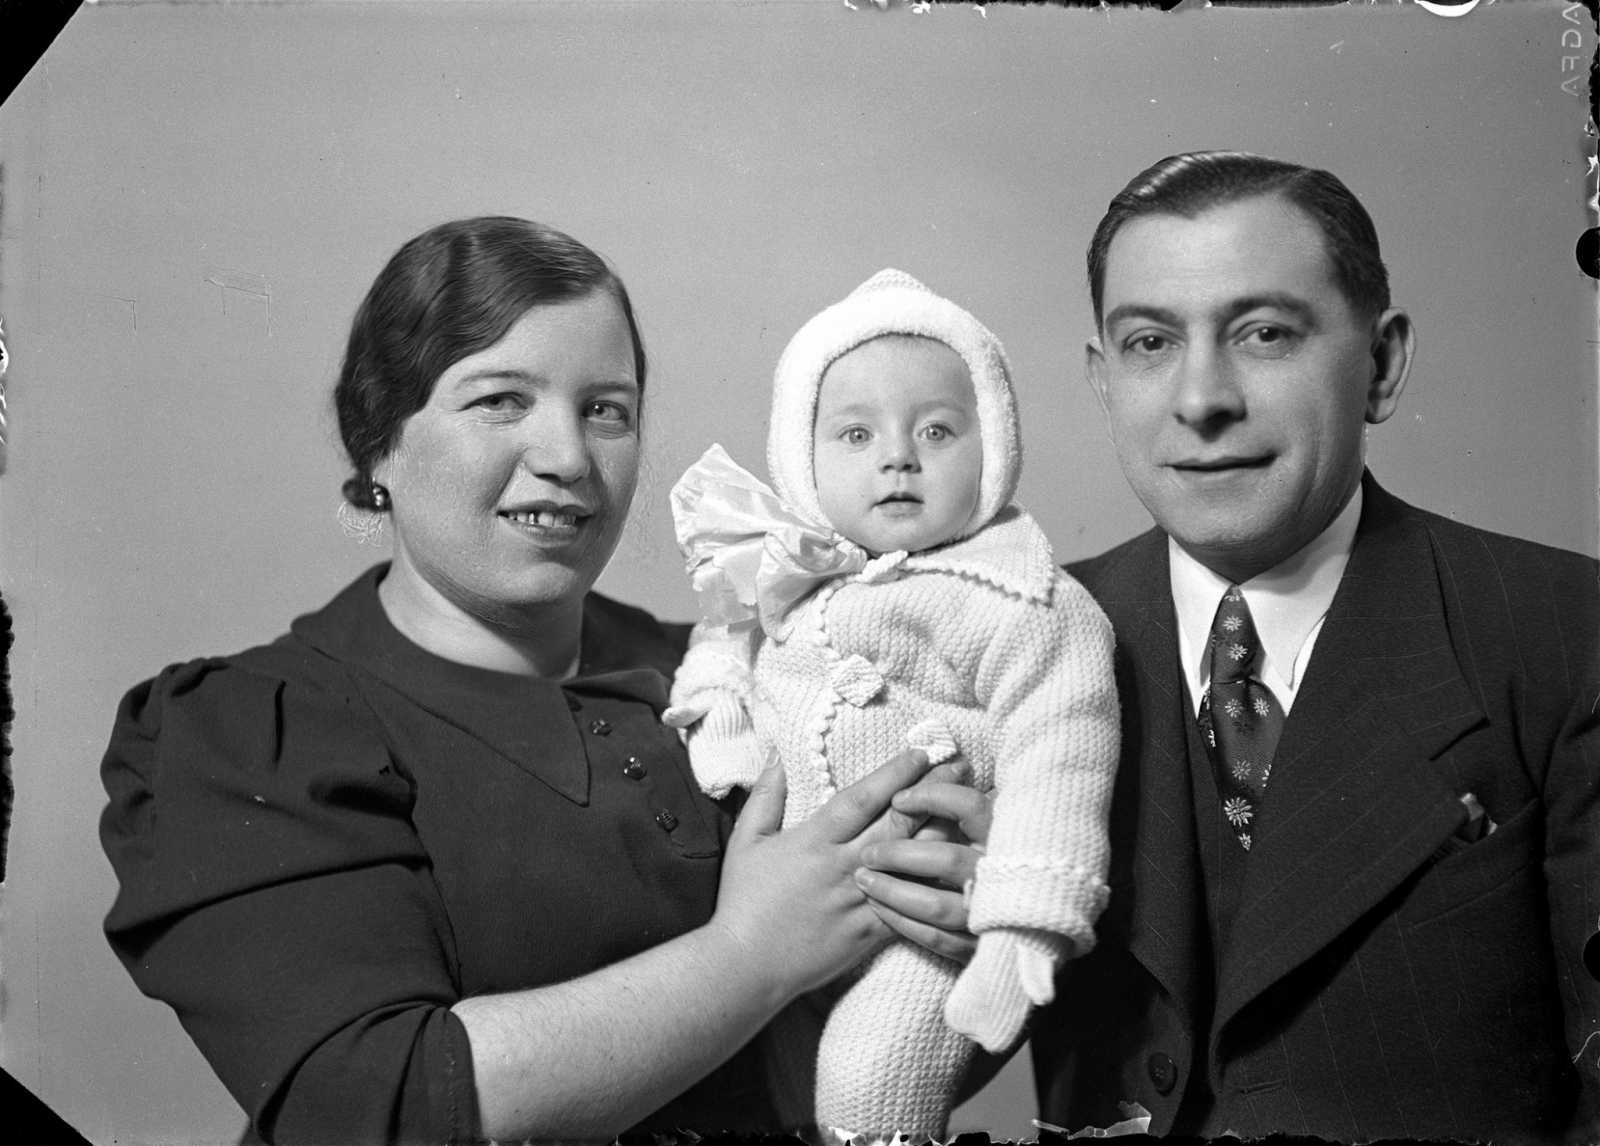 Silber Adolf (Fülöp?) és családja 1939-ben. Feltételezések szerint a képen Silber Fülöp szabó (szül. 1900-ban Szászrégenben), felesége Szeréna (szül. Katz, 1907-ben Páncélcsehben) és kislányuk, Olga (szül. 1938, Páncélcseh) szerepel. A családot Auschwitzban meggyilkolták. (Sárdi Fotó/Arhiva de Fotografie)  